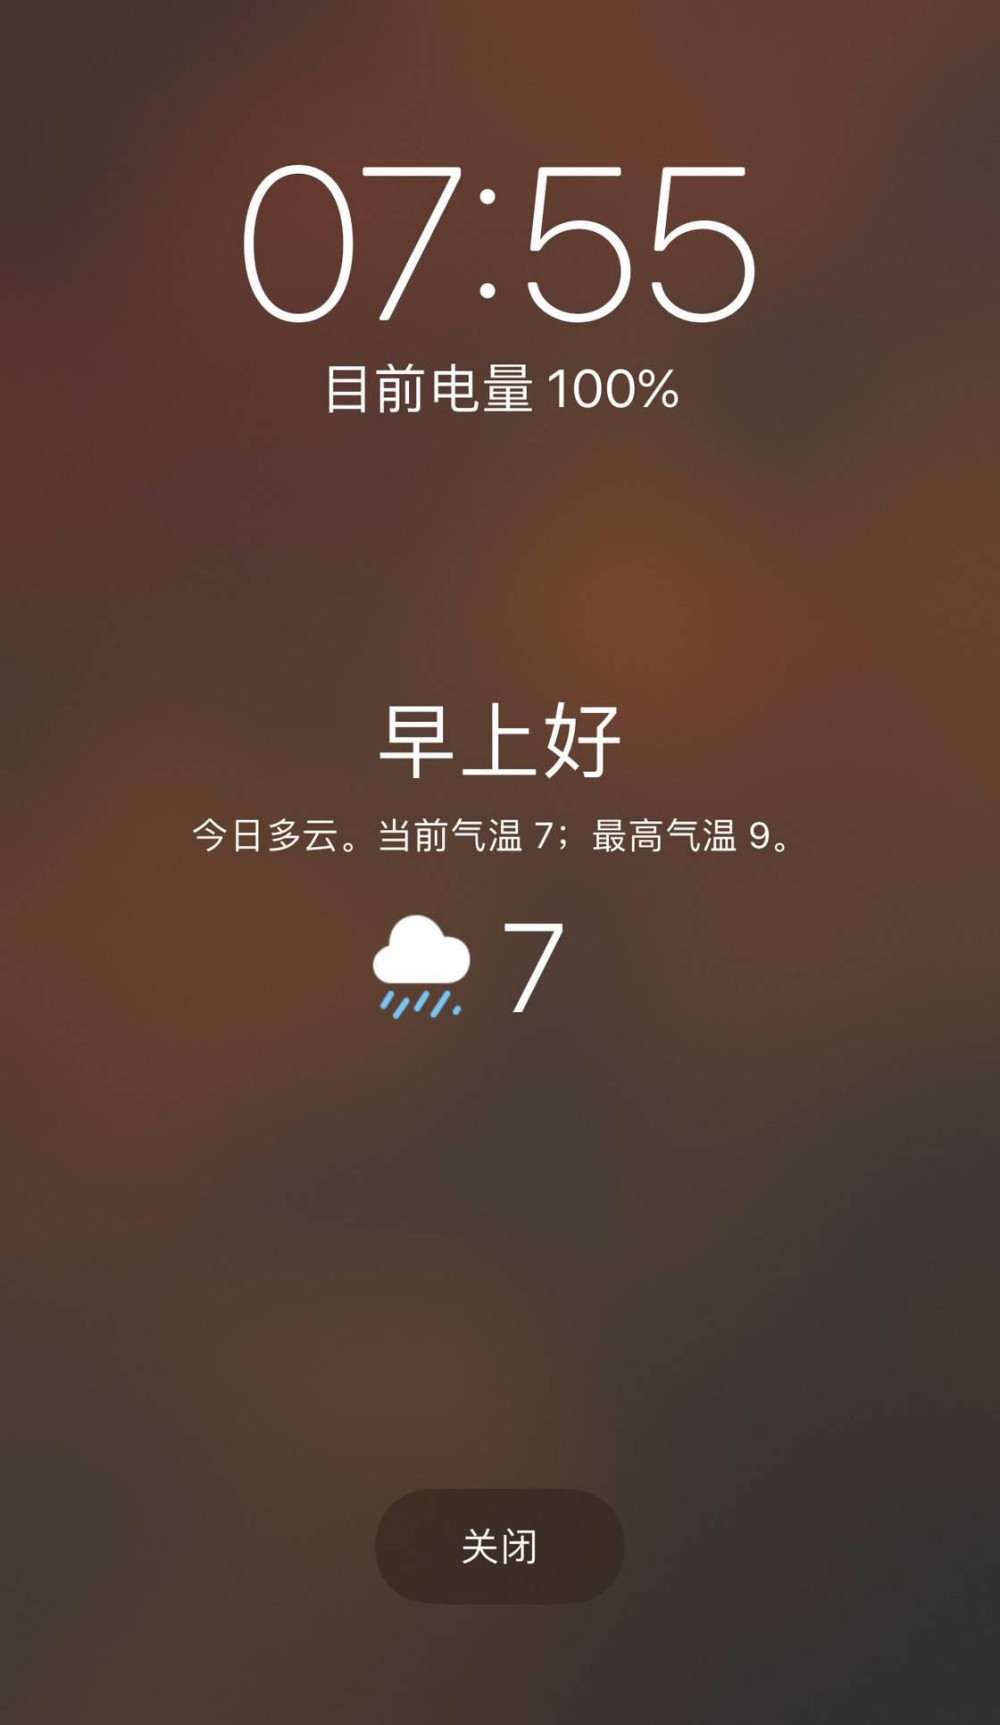 如何在 iPhone 锁屏页面显示天气详情？插图1